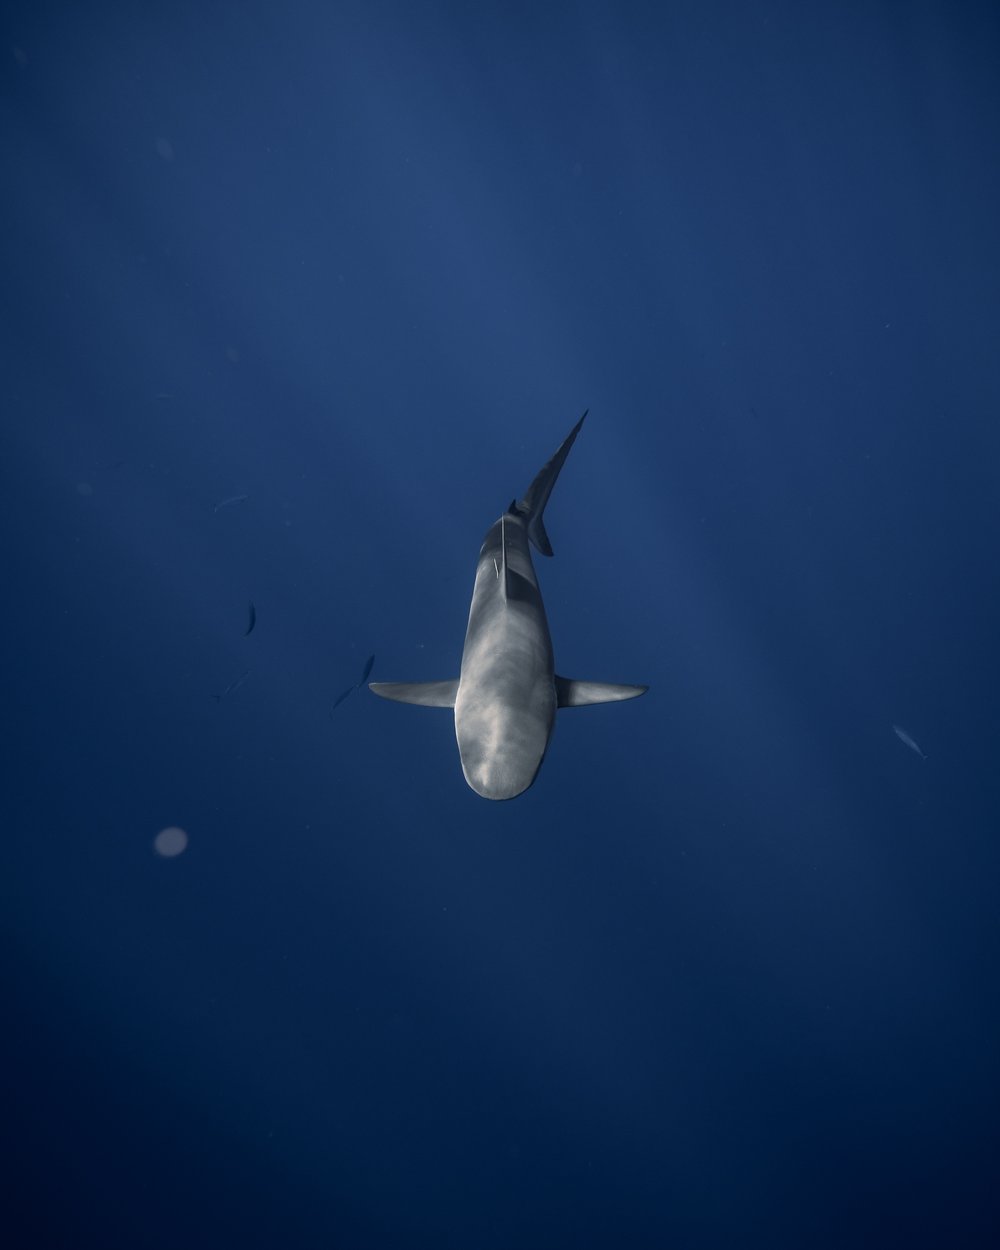 Galapagos Shark